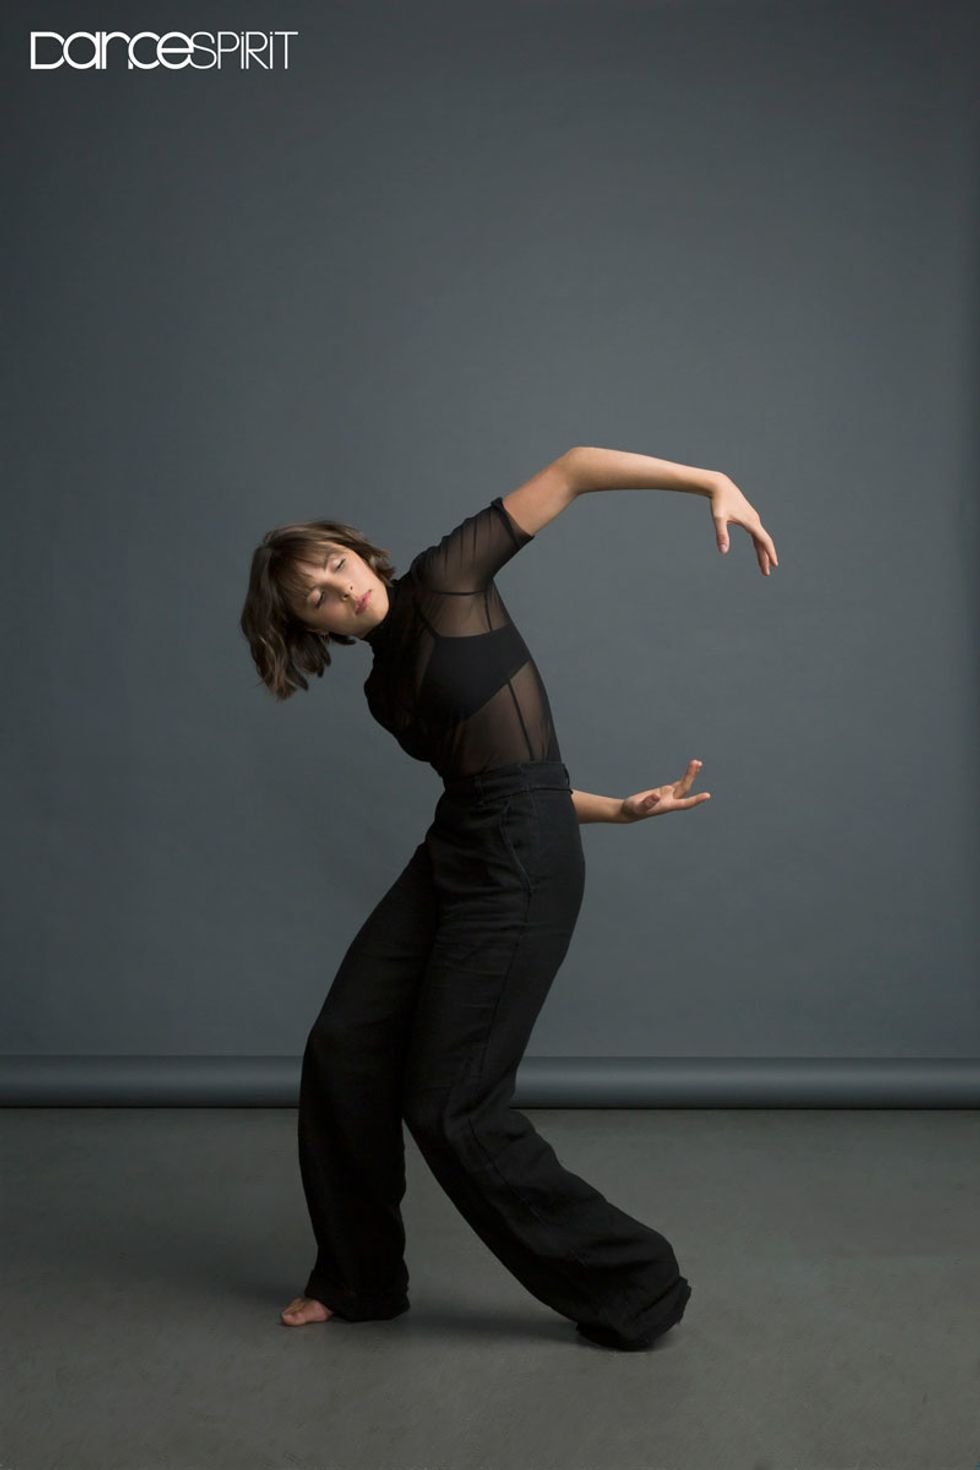 FEATURED: Dance Spirit Magazine by Olivia Manno